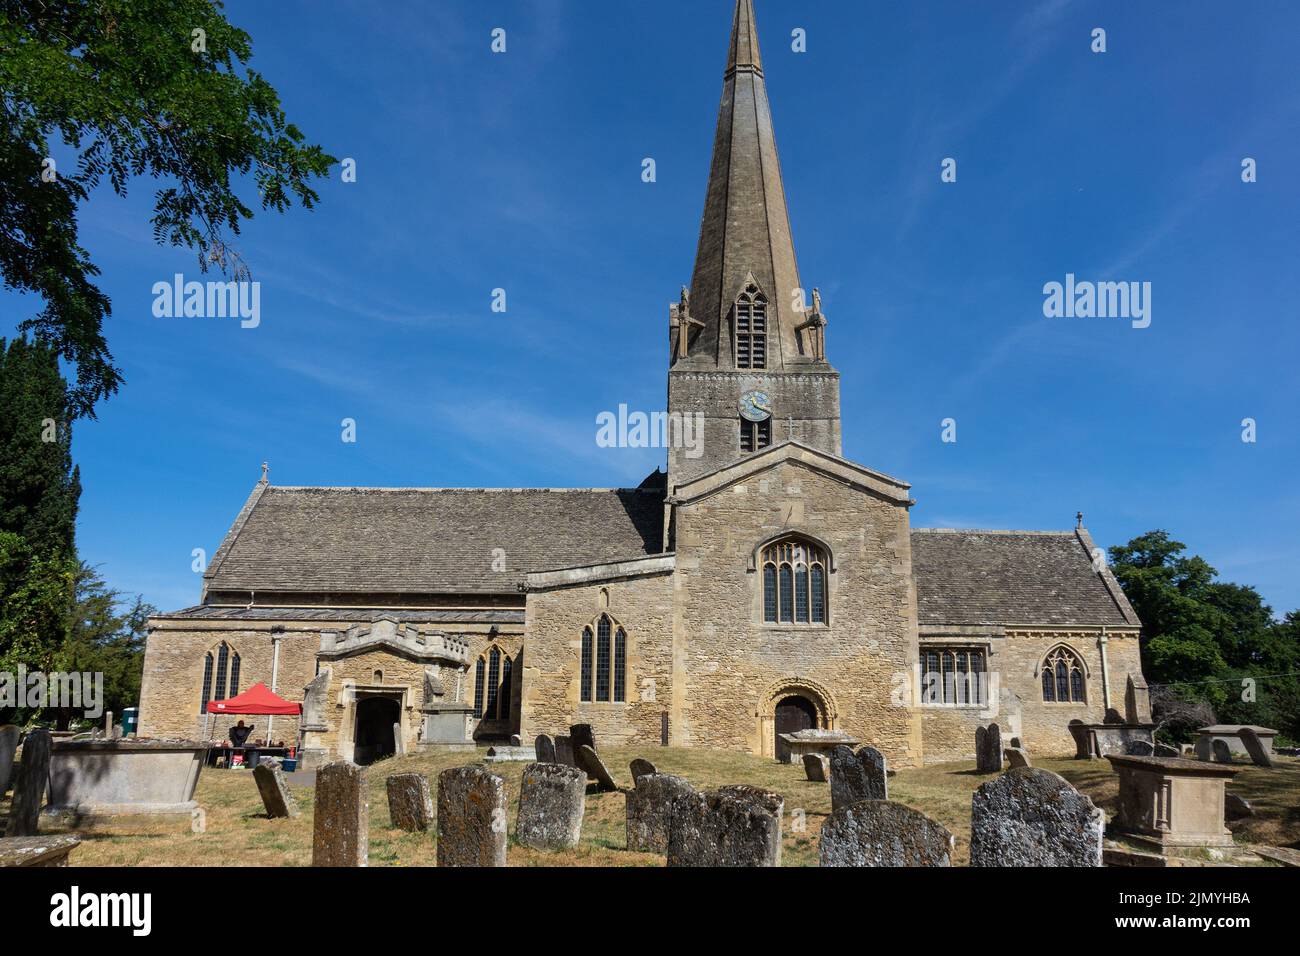 Angleterre, Oxfordshire, église de Bampton Banque D'Images